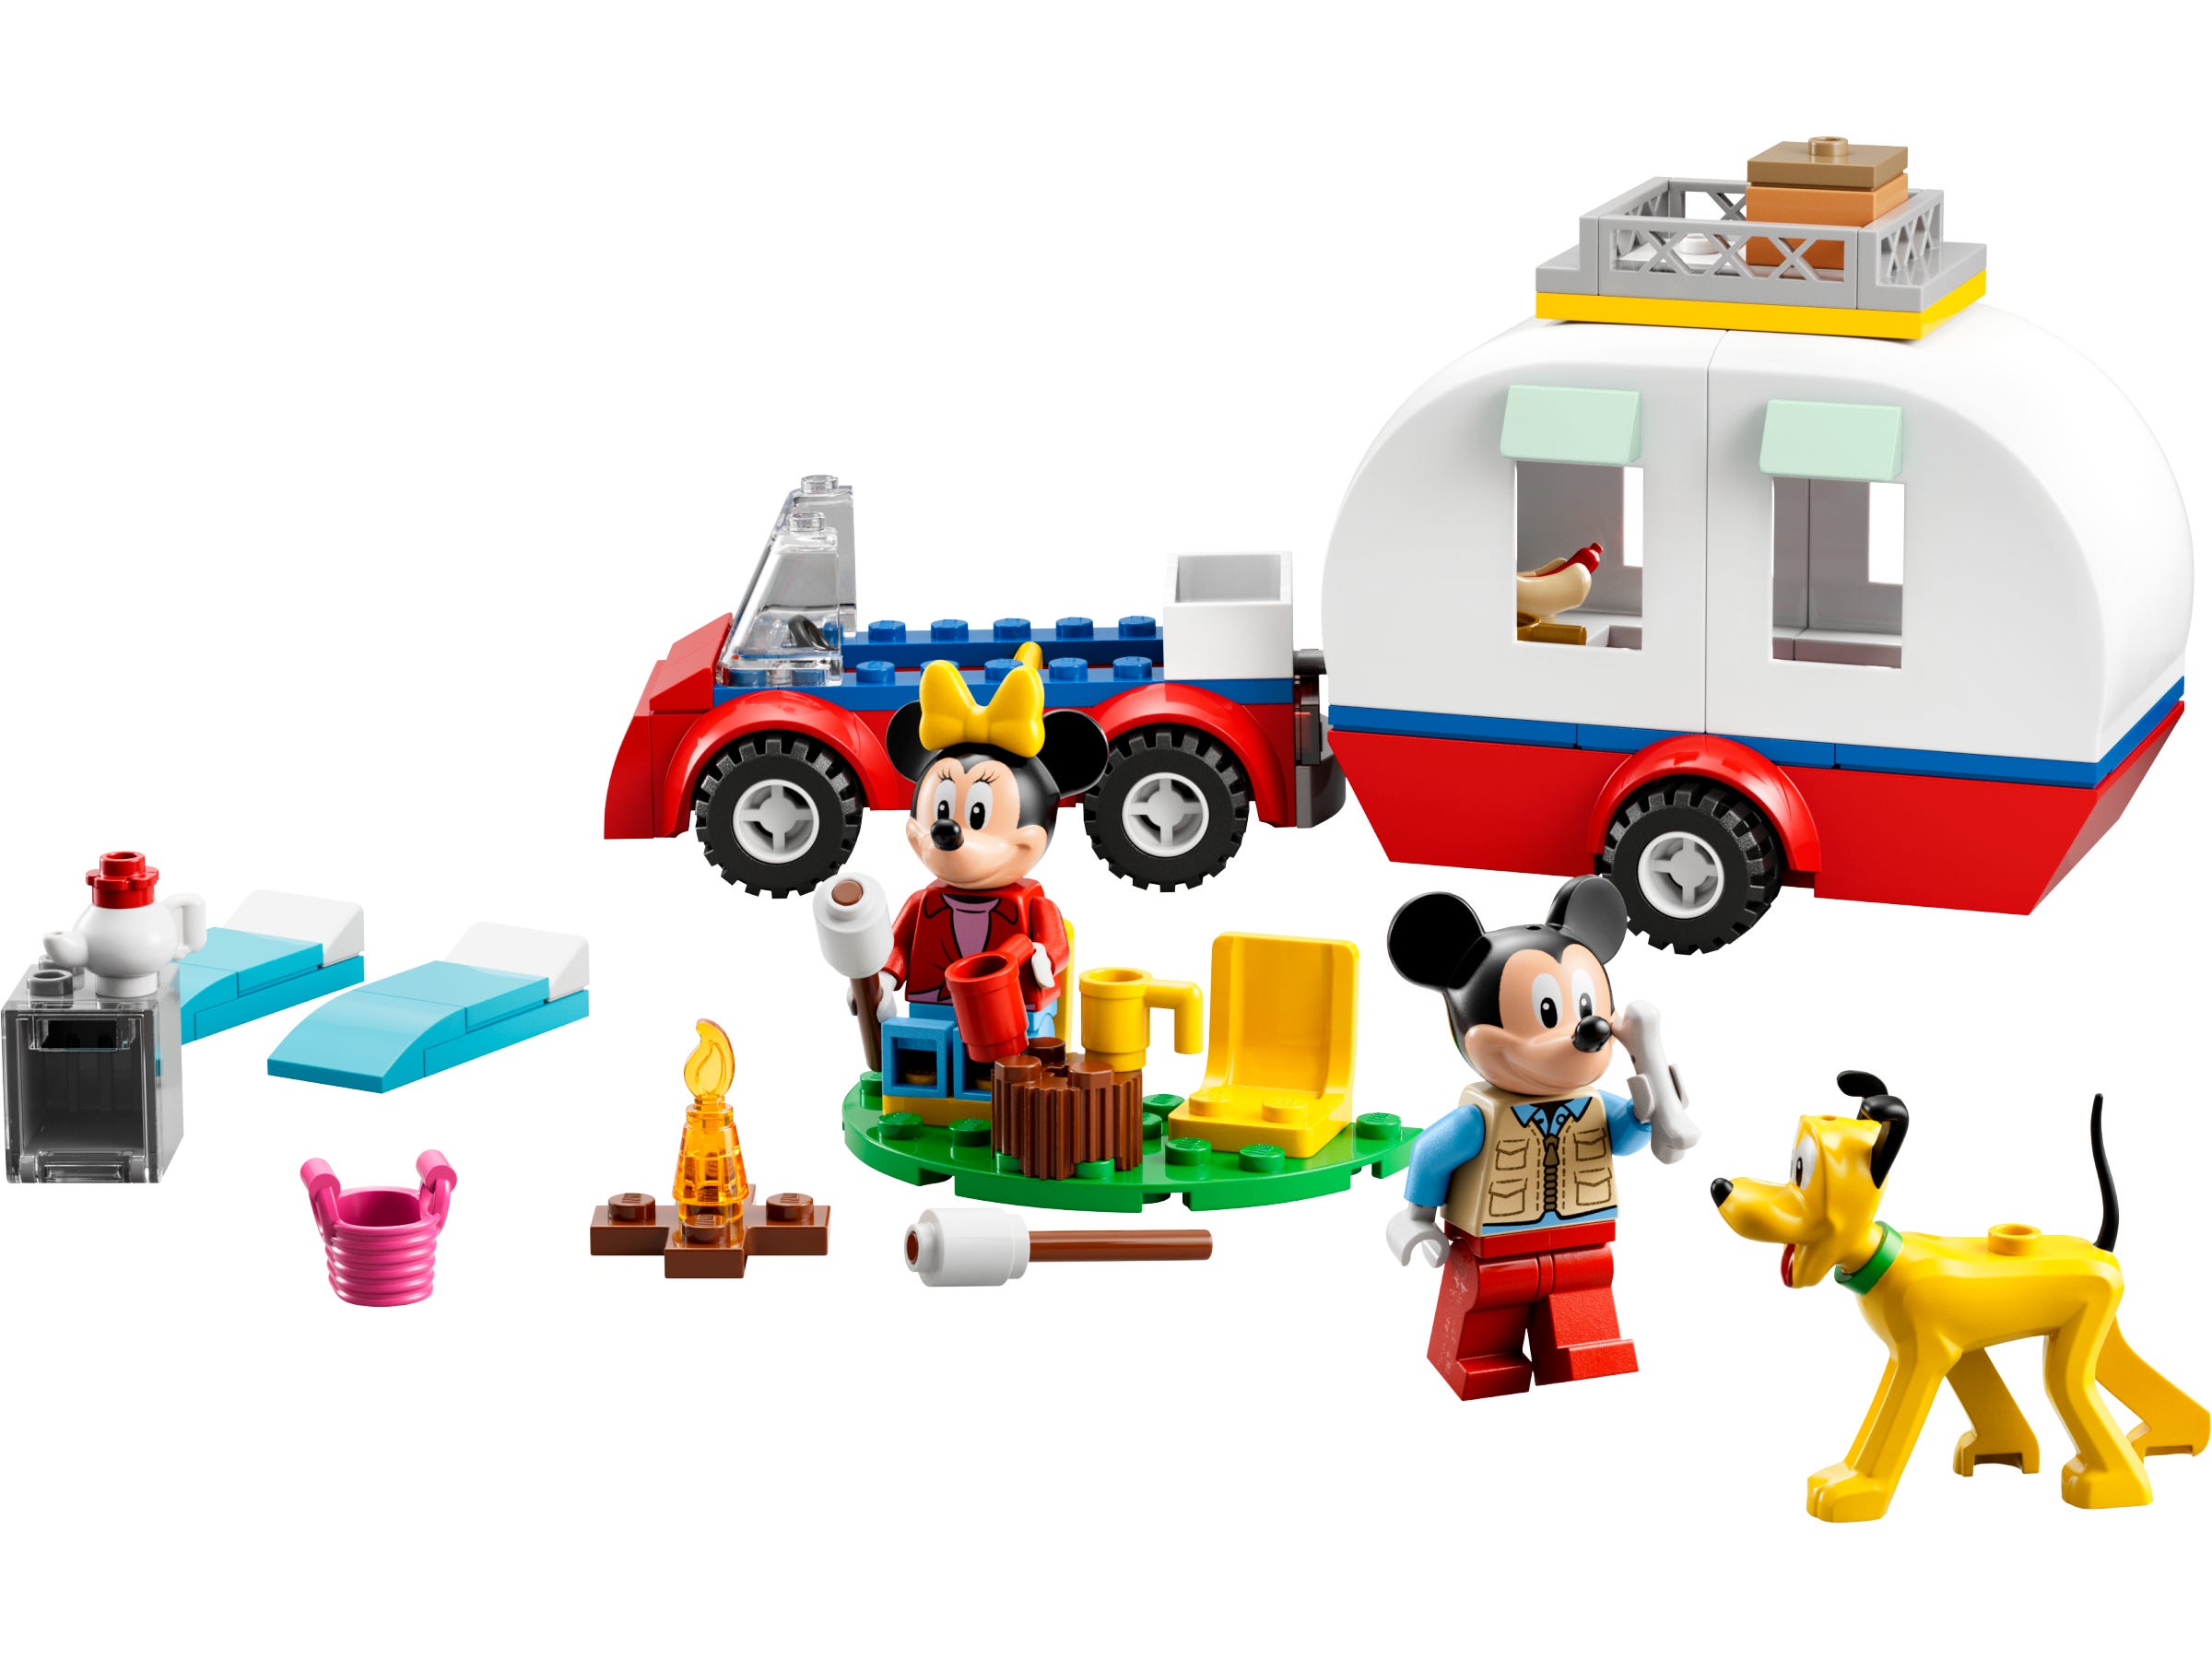 LEAKED! LEGO Disney Buildable Stitch LEGO Set! #lego #legoleak